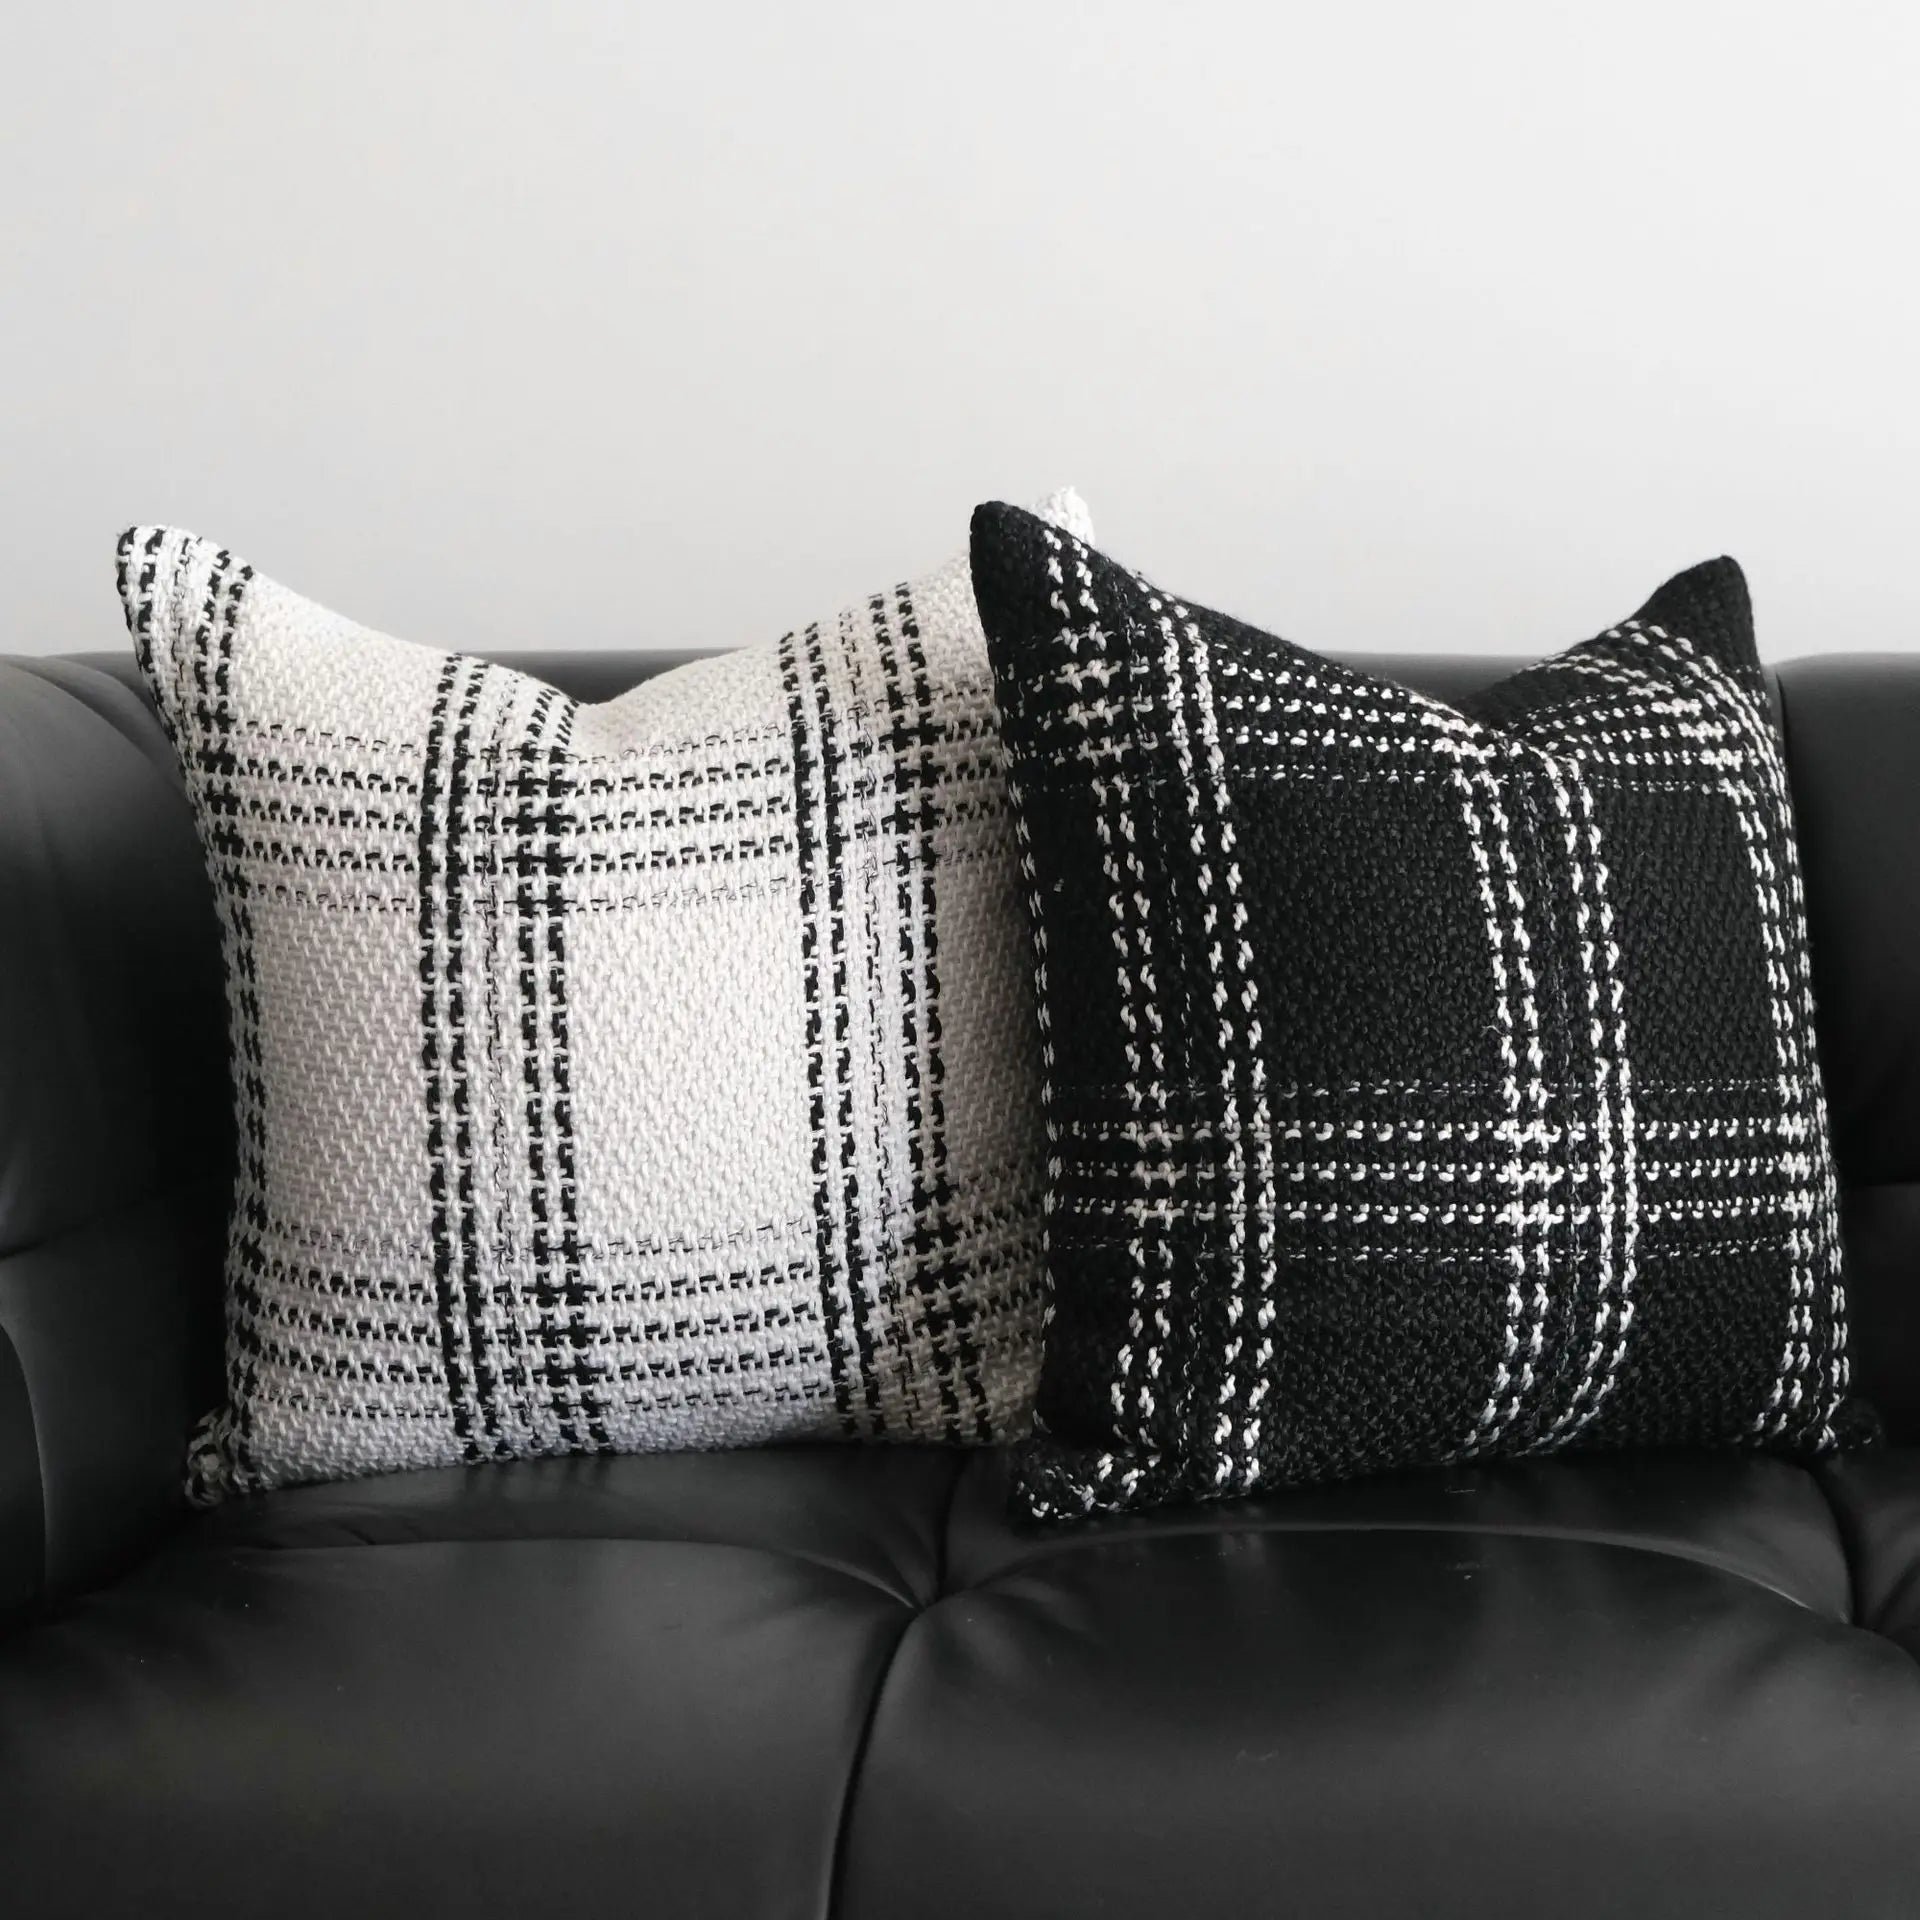 Plaid Woven Geometric Cushion Cover